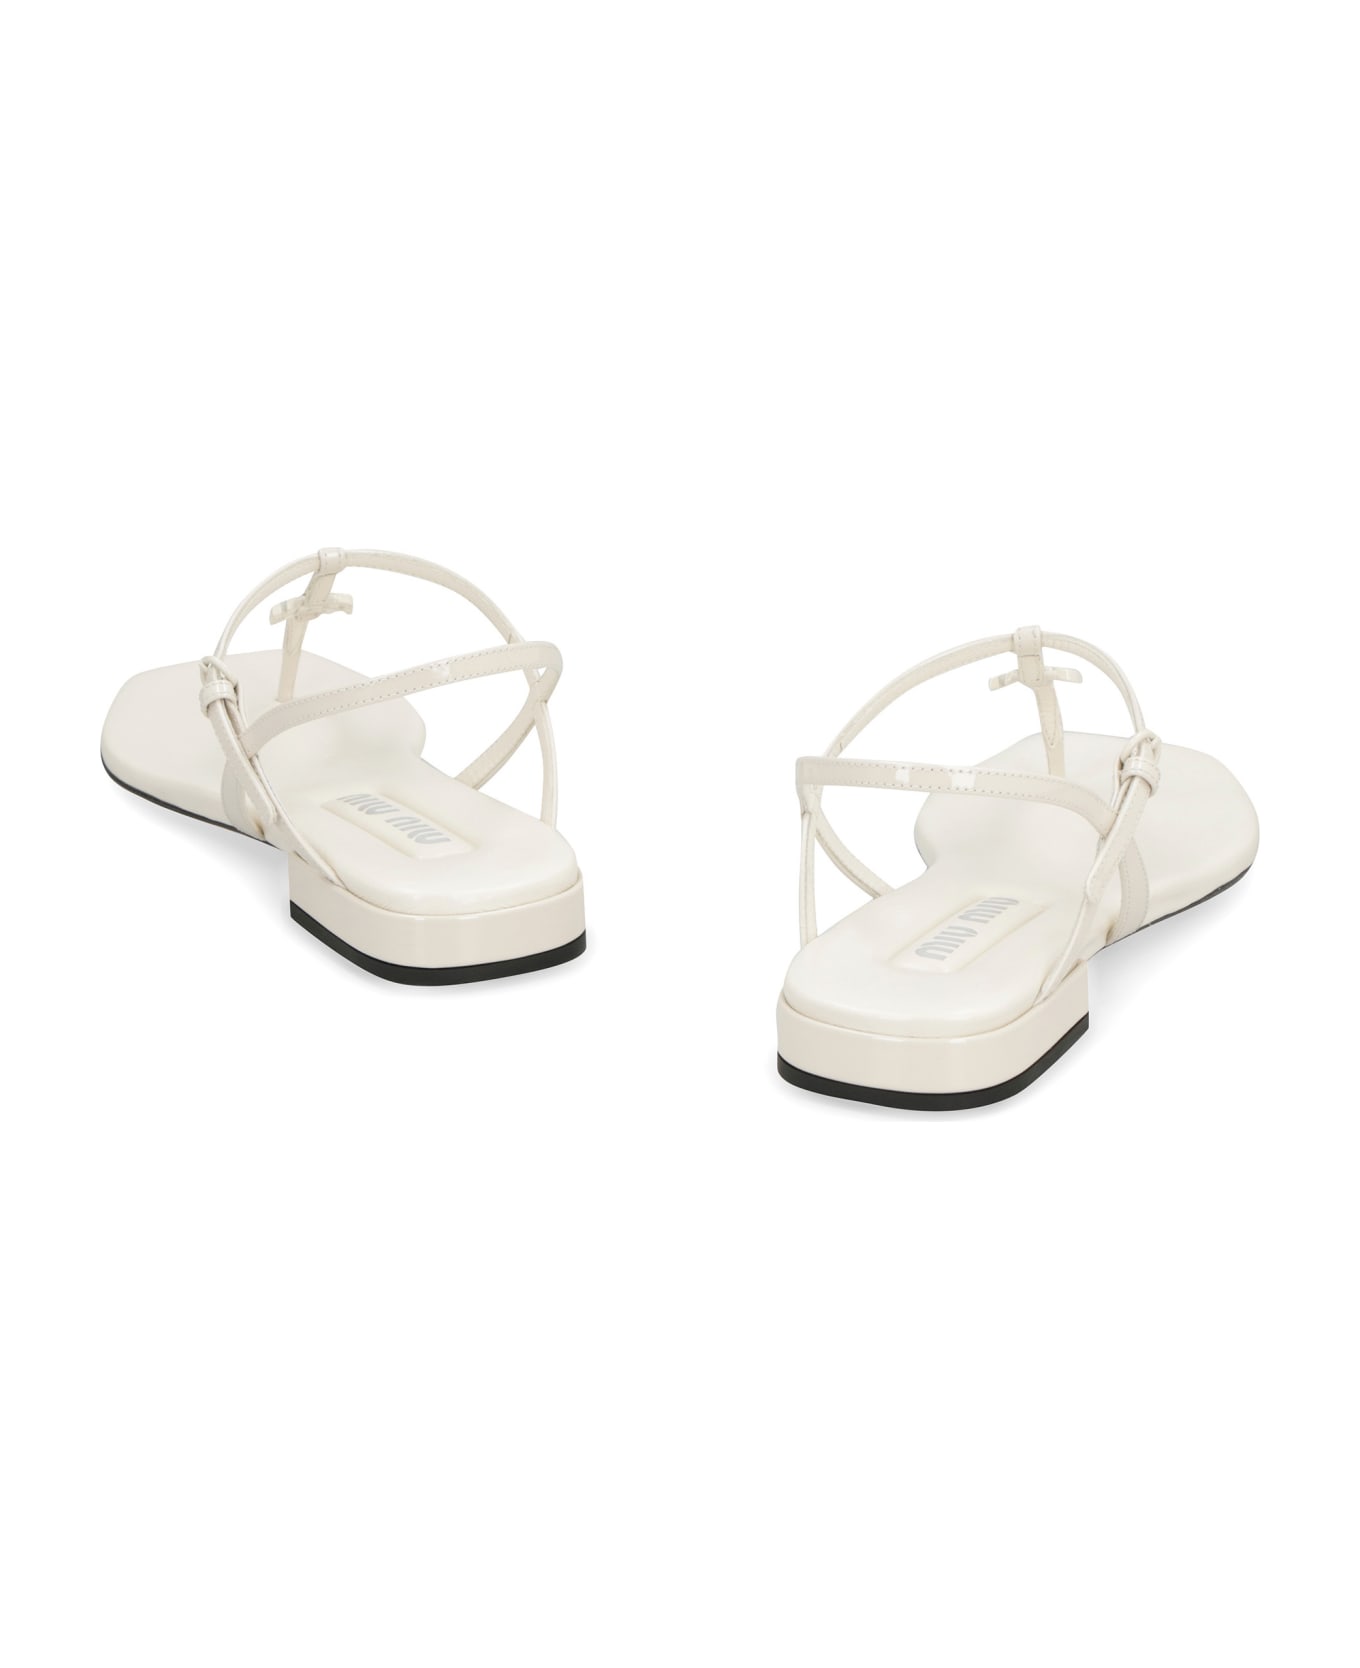 Miu Miu Leather Flat Sandals - White